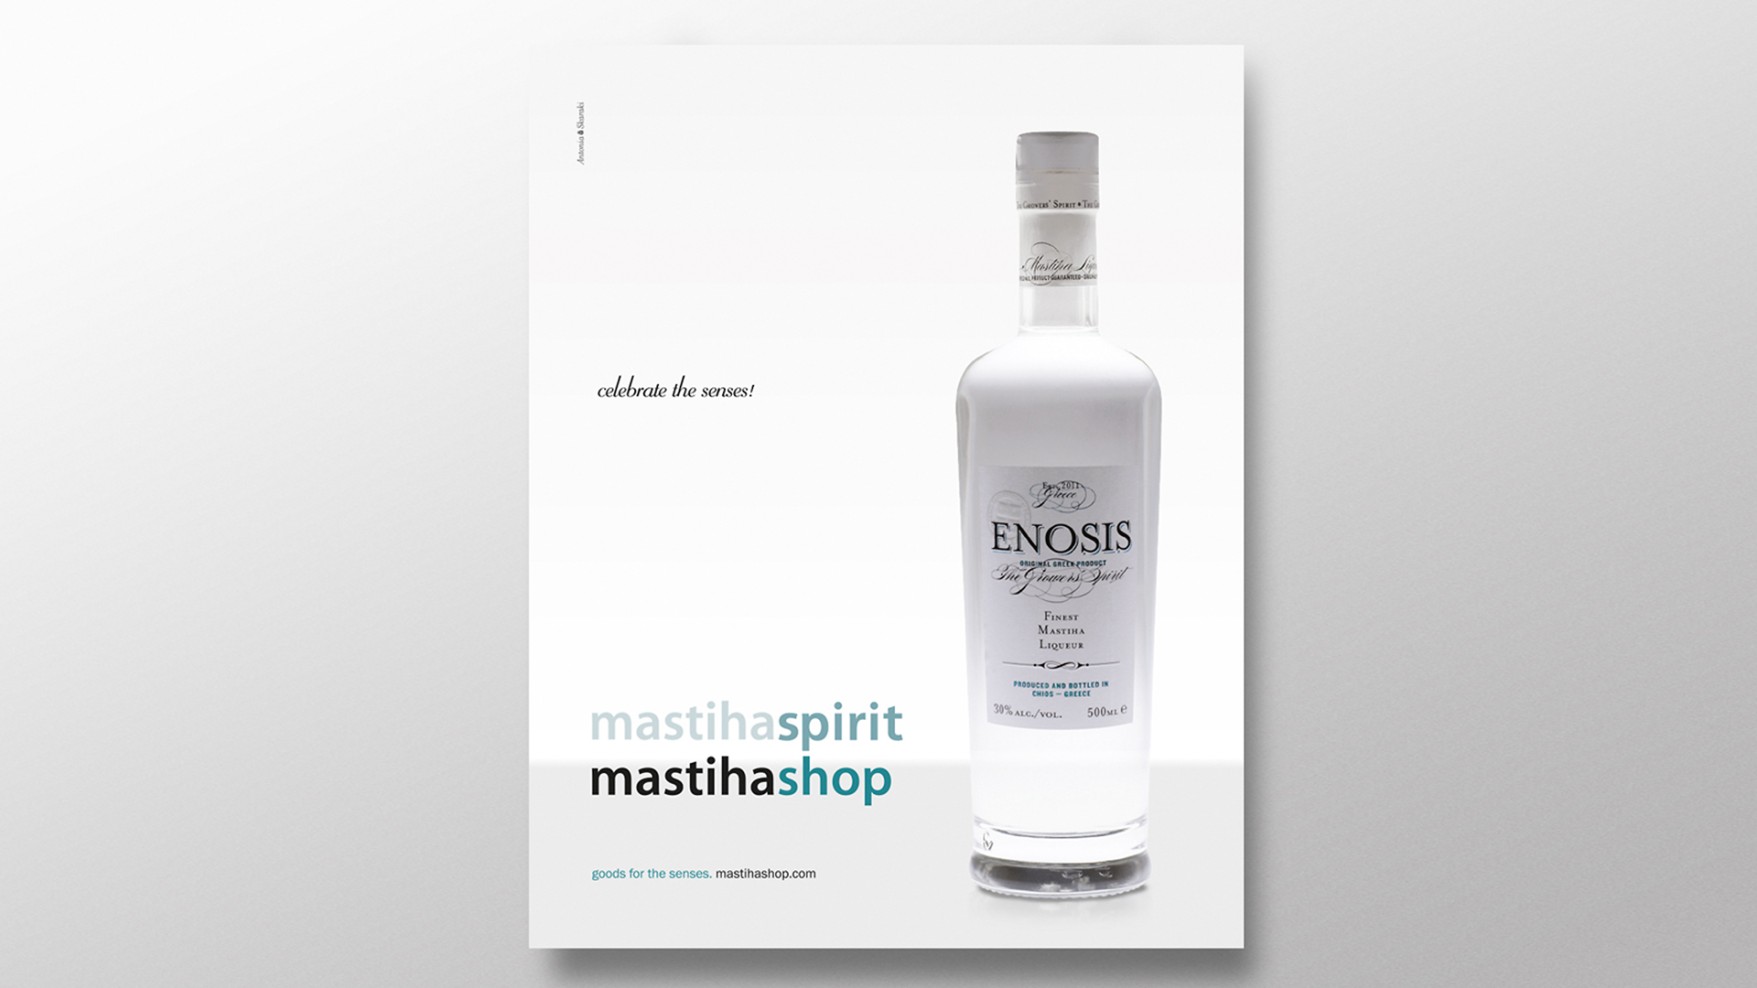  work-mastiha-shop-enosis-liquer-4